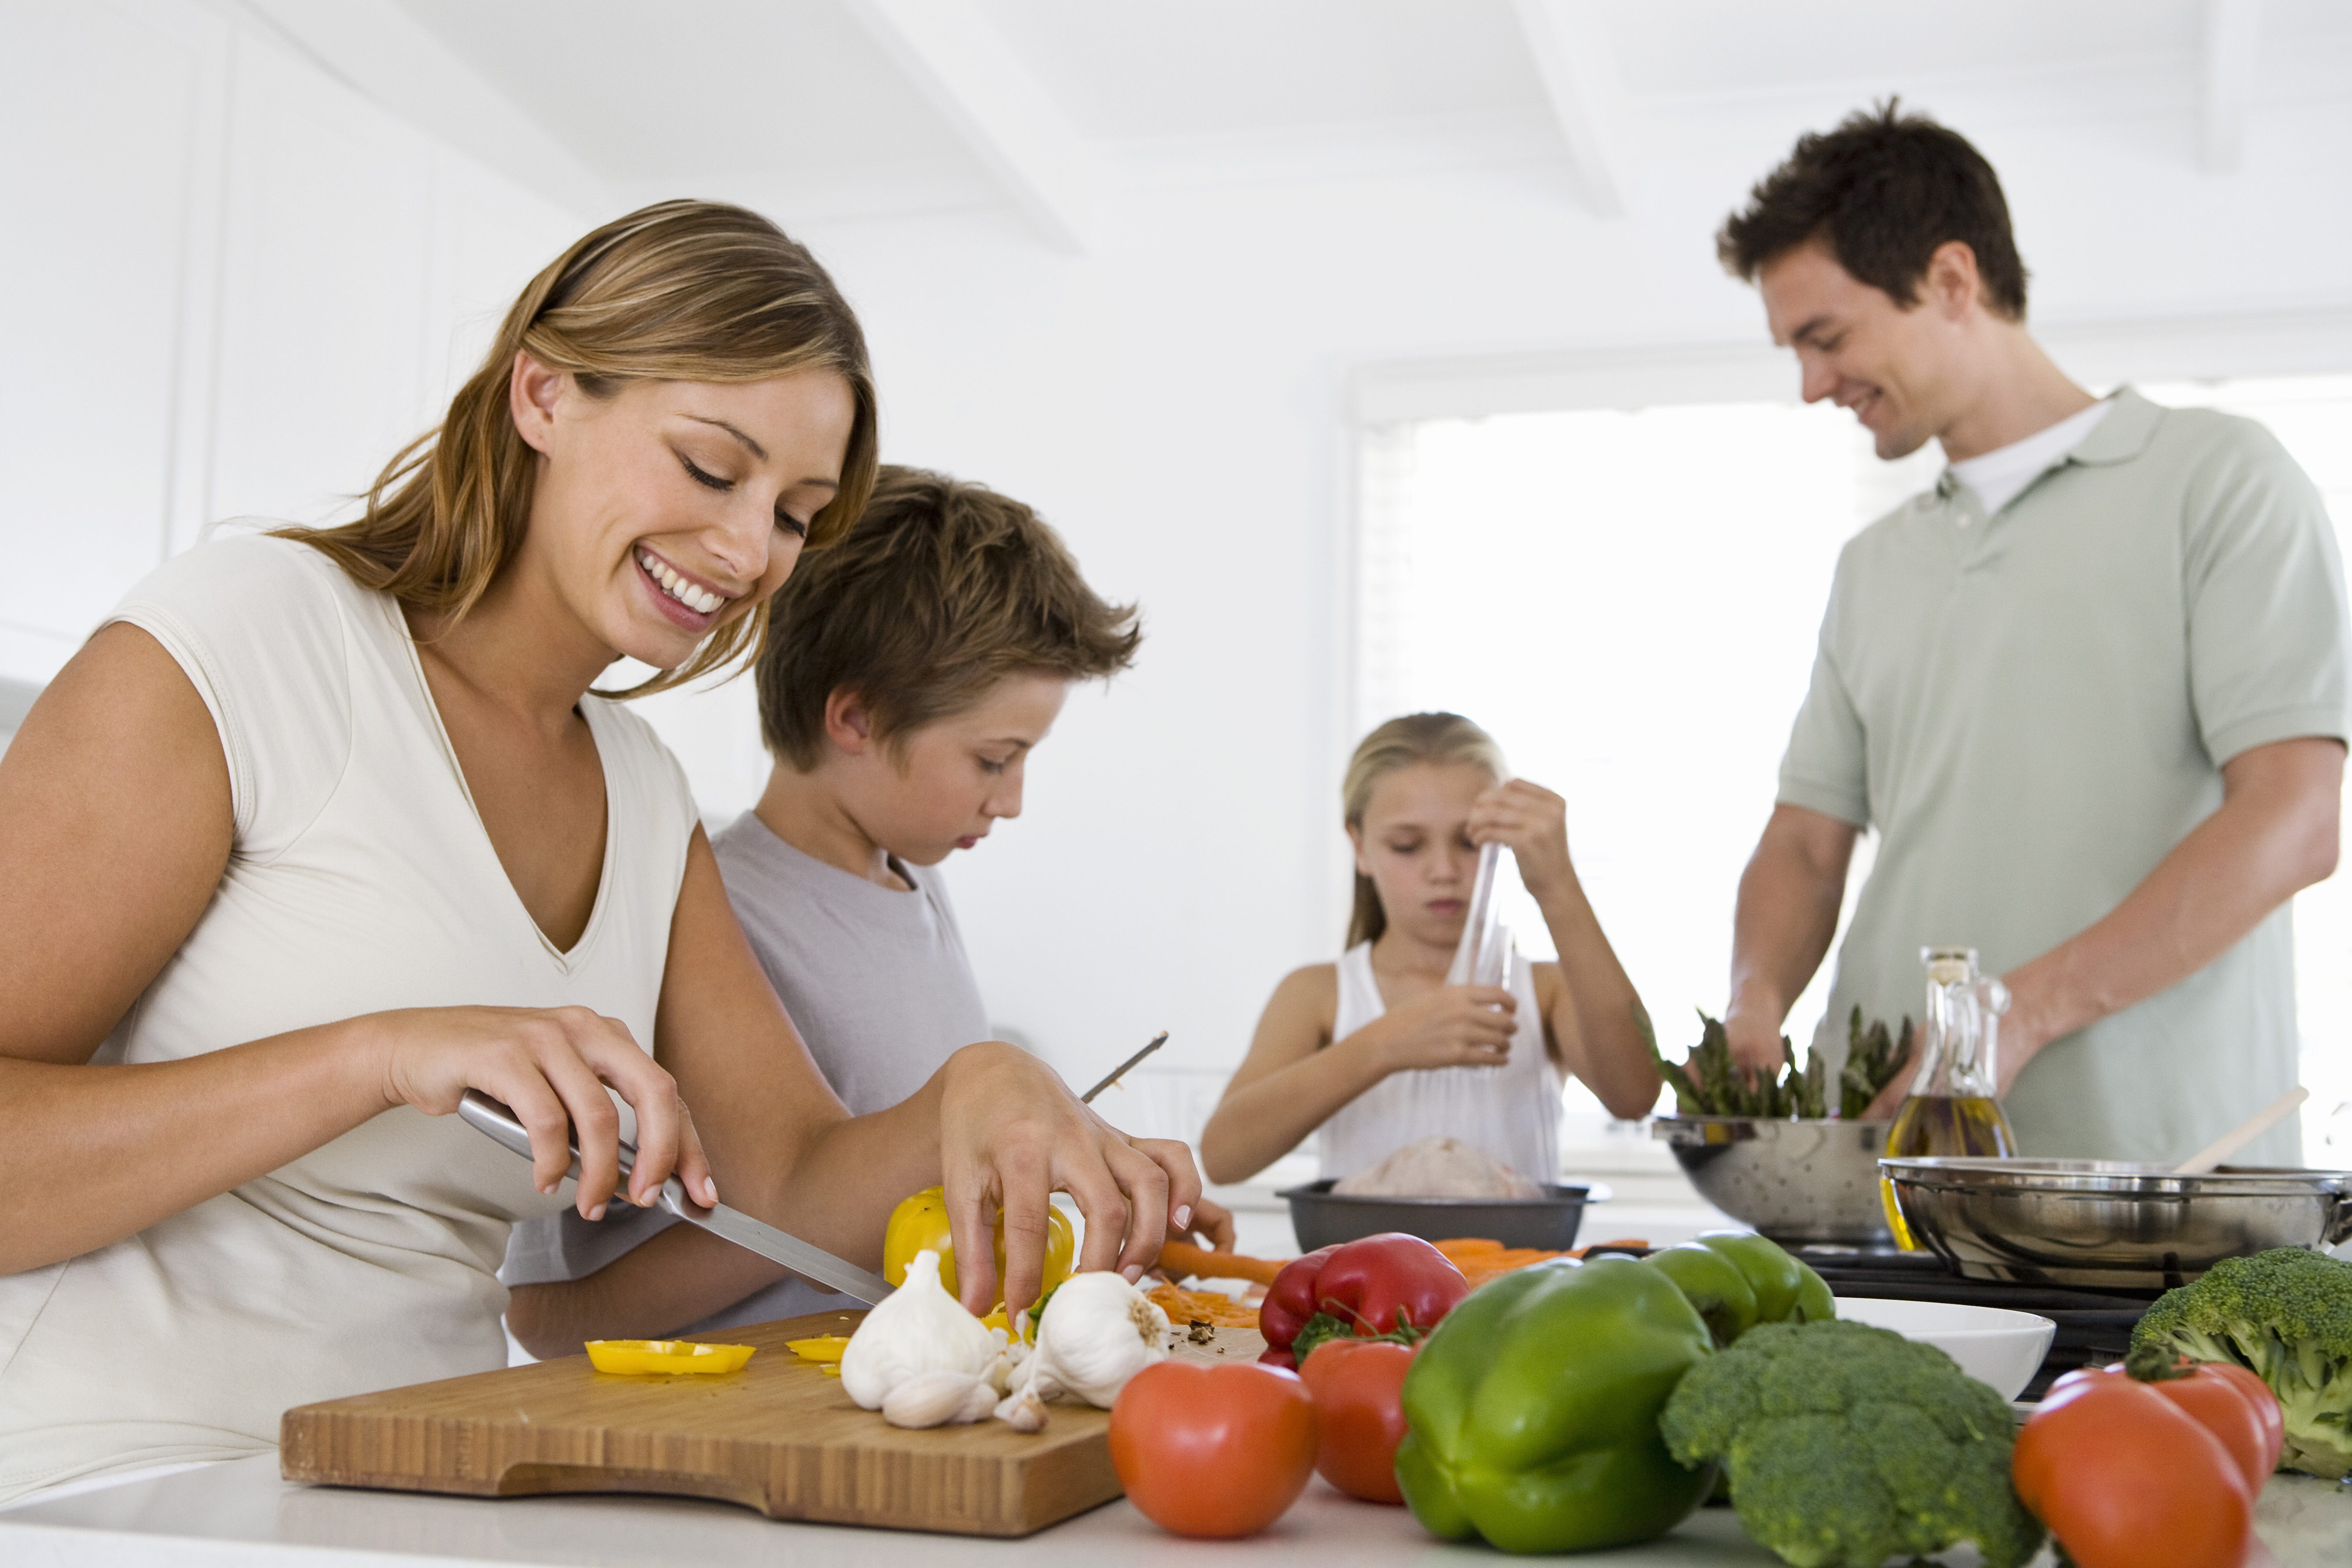 Бытовая сторона жизни. Здоровый образ жизни в скиье. Здоровое питание в семье. Домашнее хозяйство. Правильное питание семья.